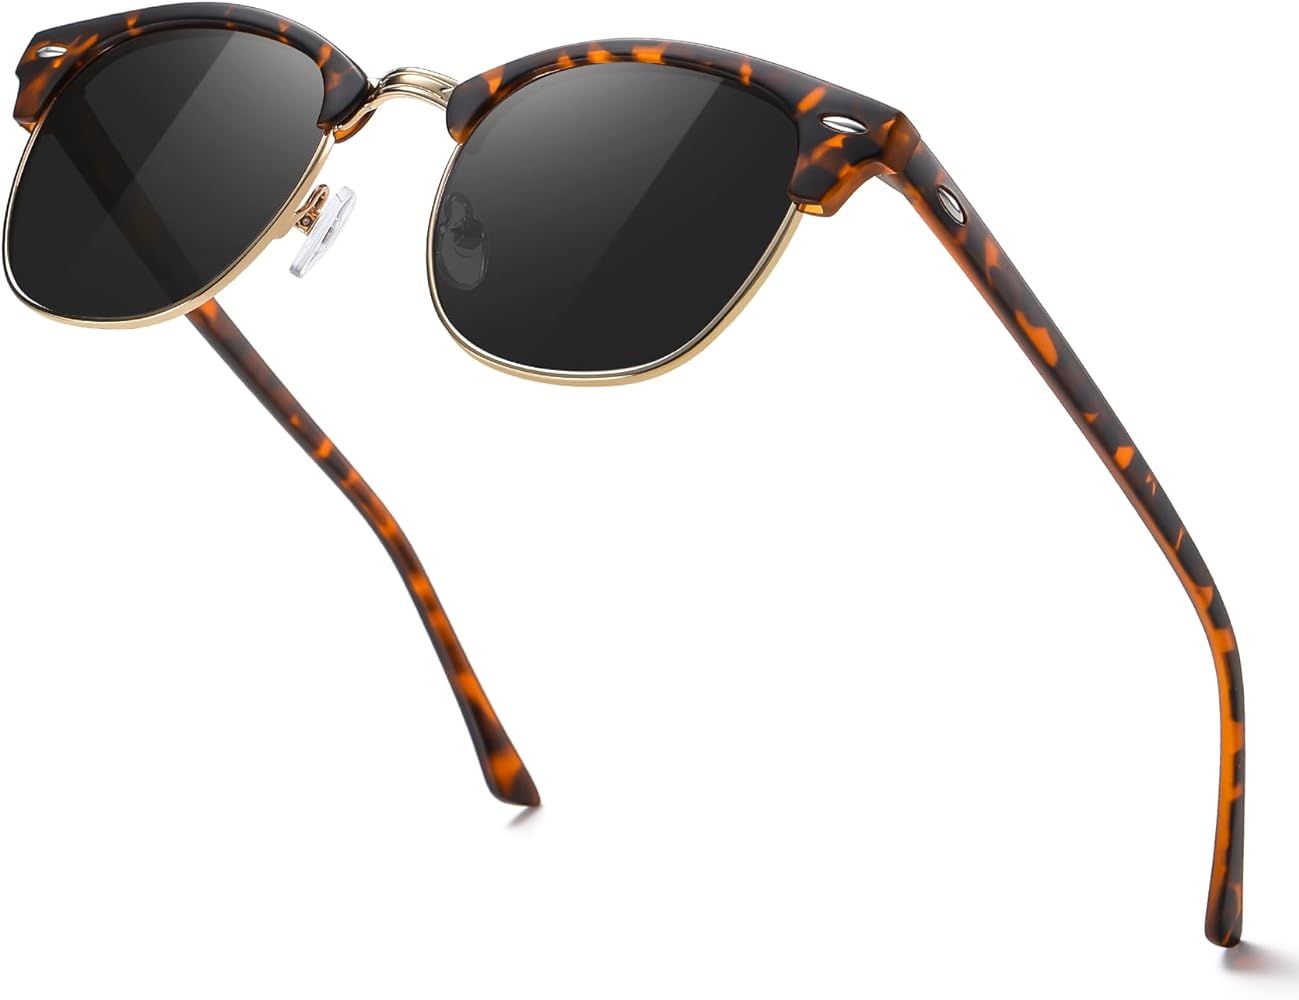 MEETSUN Retro Semi Rimless Polarized Sunglasses for Men Women Classic Trendy Driving Sun Glasses ... | Amazon (US)